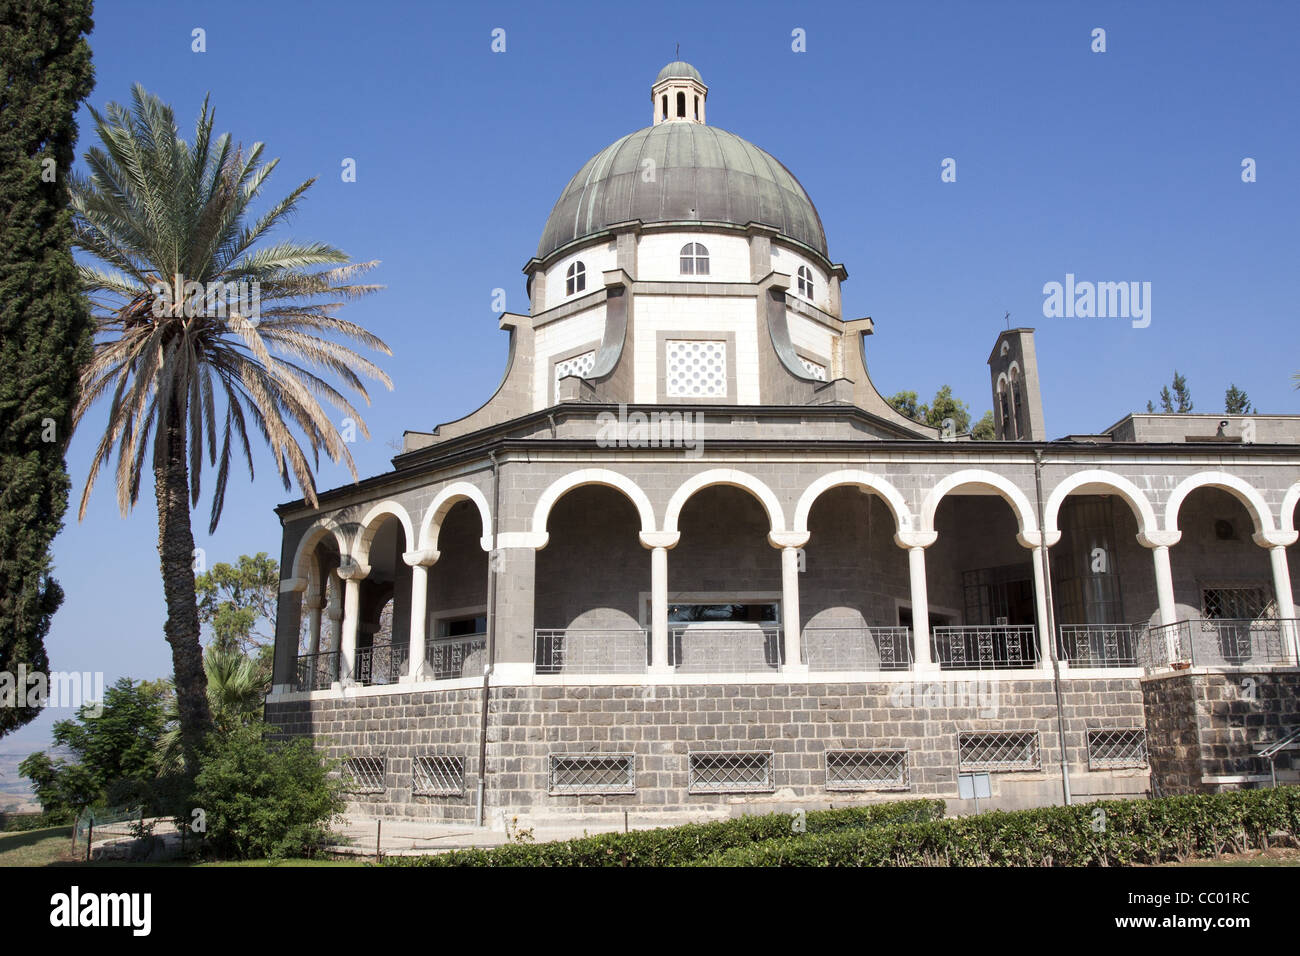 Église DES BÉATITUDES CONSTRUIT EN 1939 PAR L'ARCHITECTE ANTONIO BARLUZZI sur le Mont des Béatitudes, en Galilée, Israël Banque D'Images